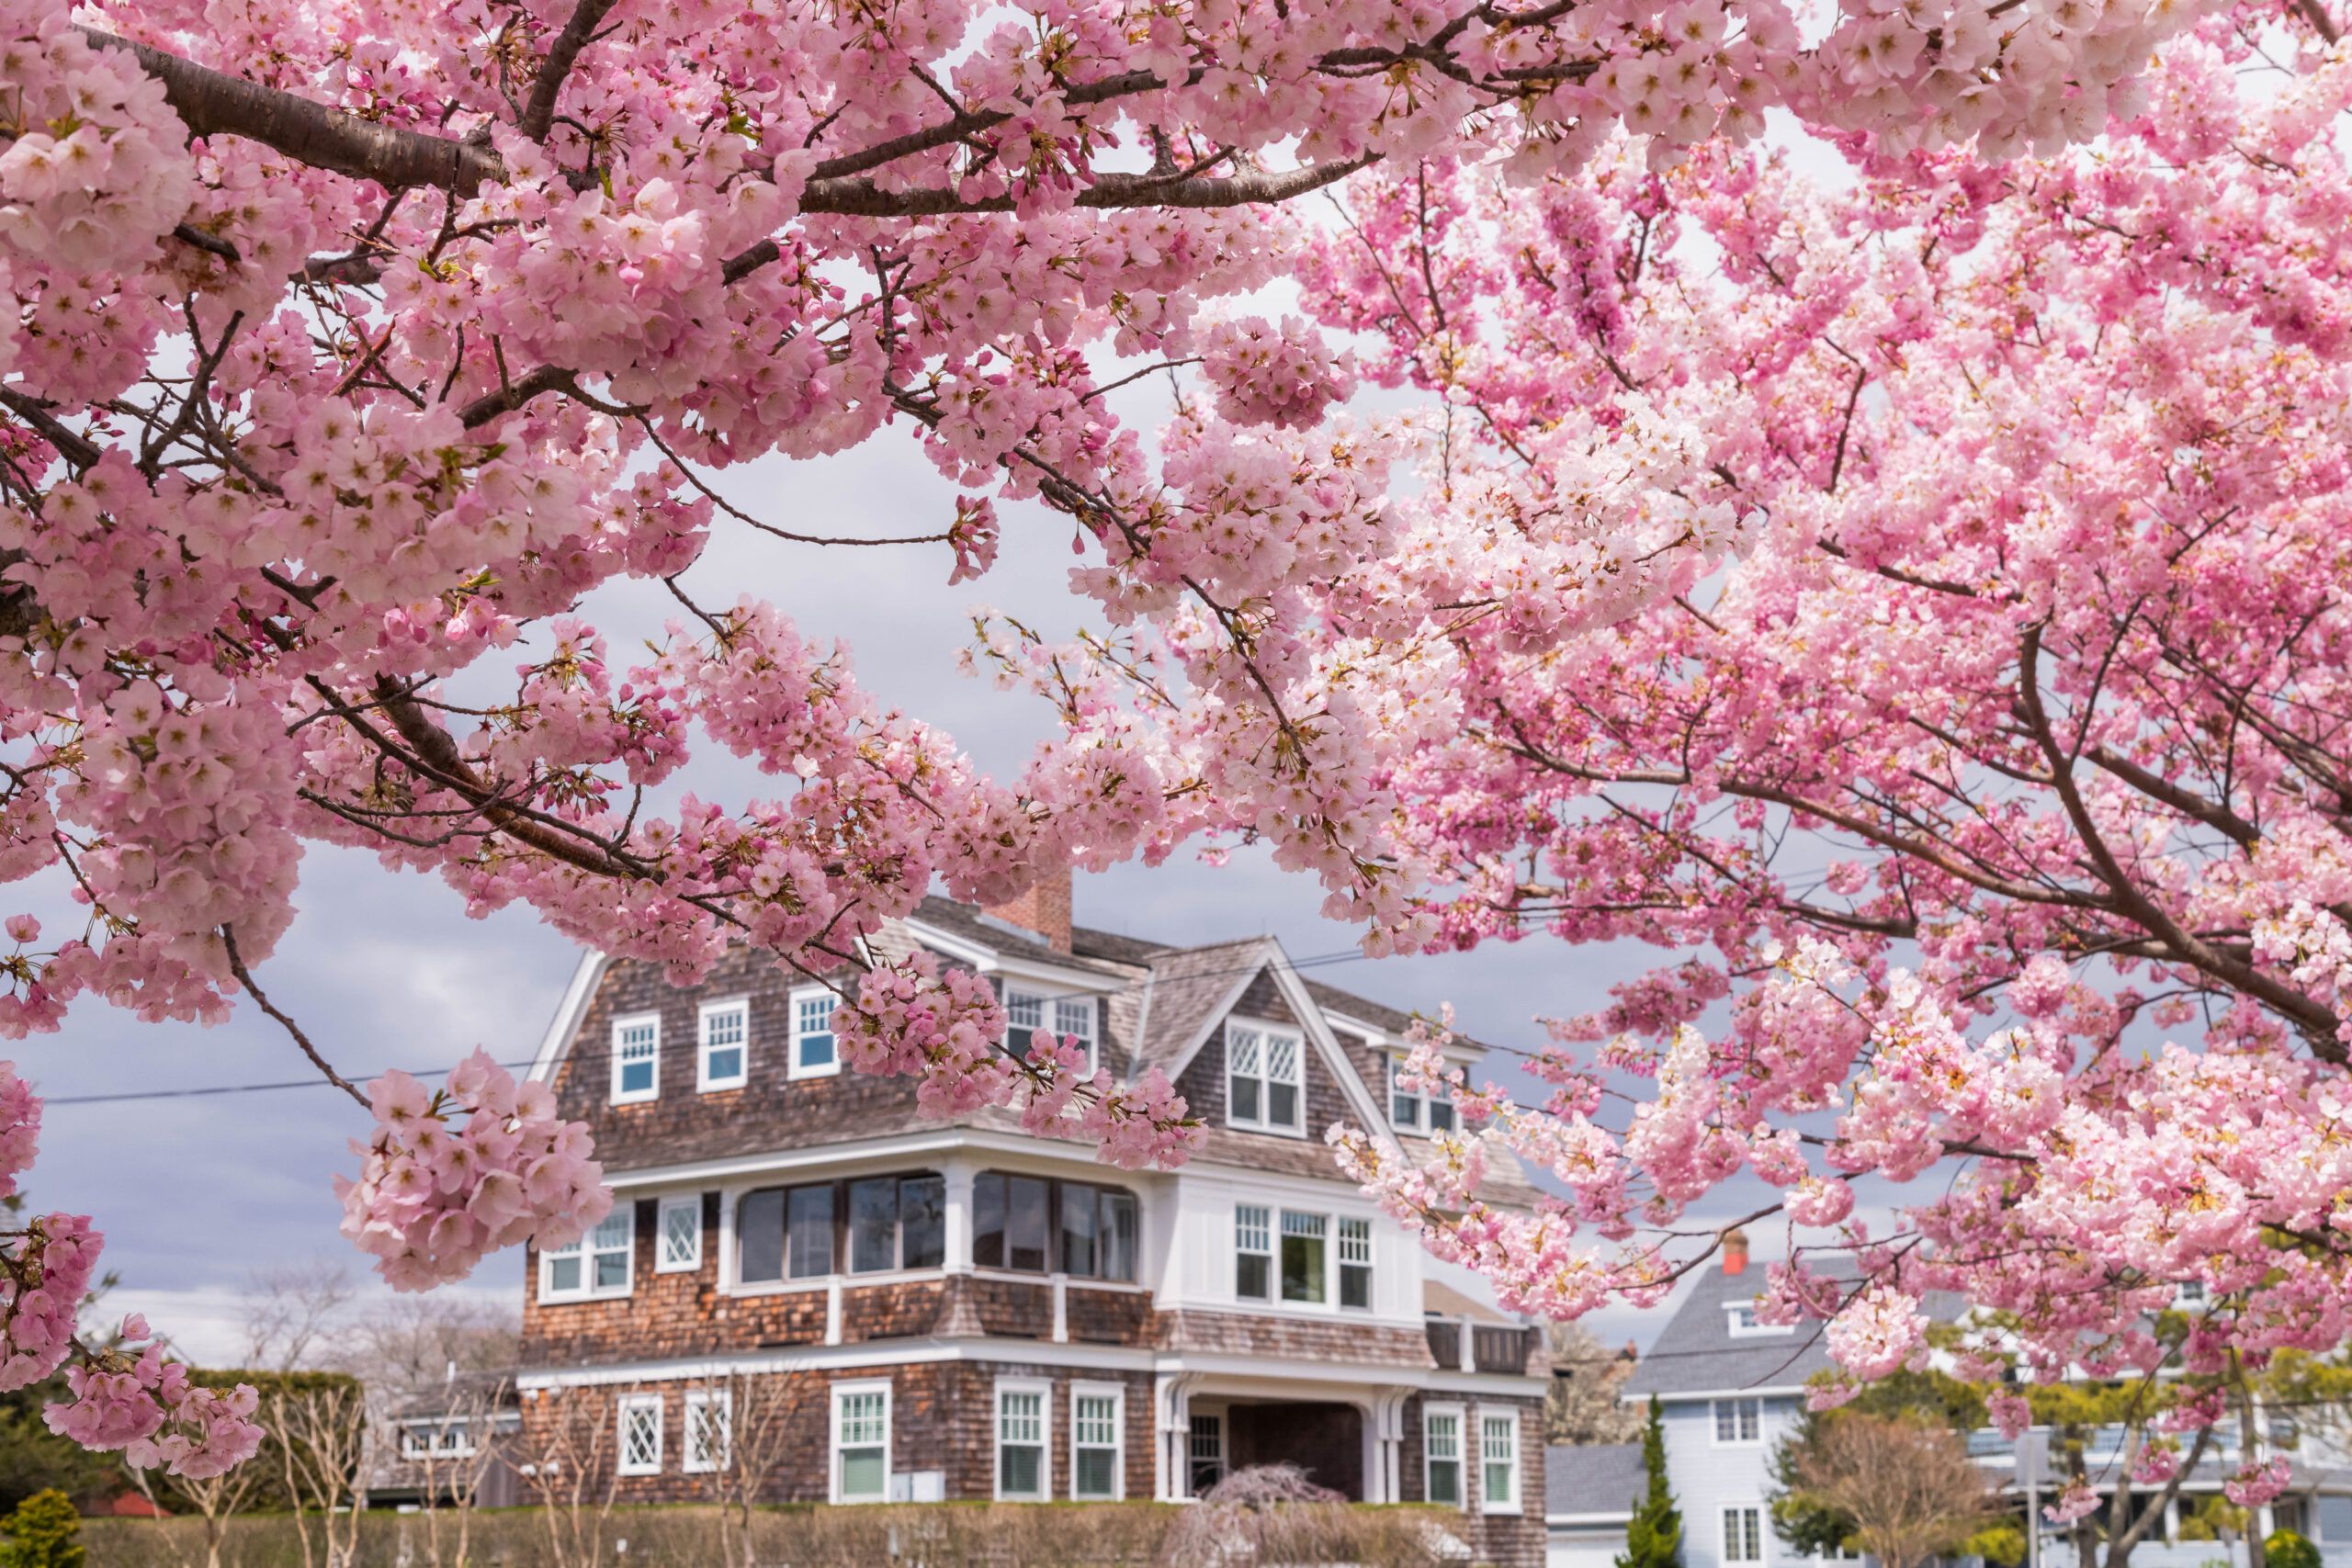 An abundance of pink cherry blossoms frame a charming beach house